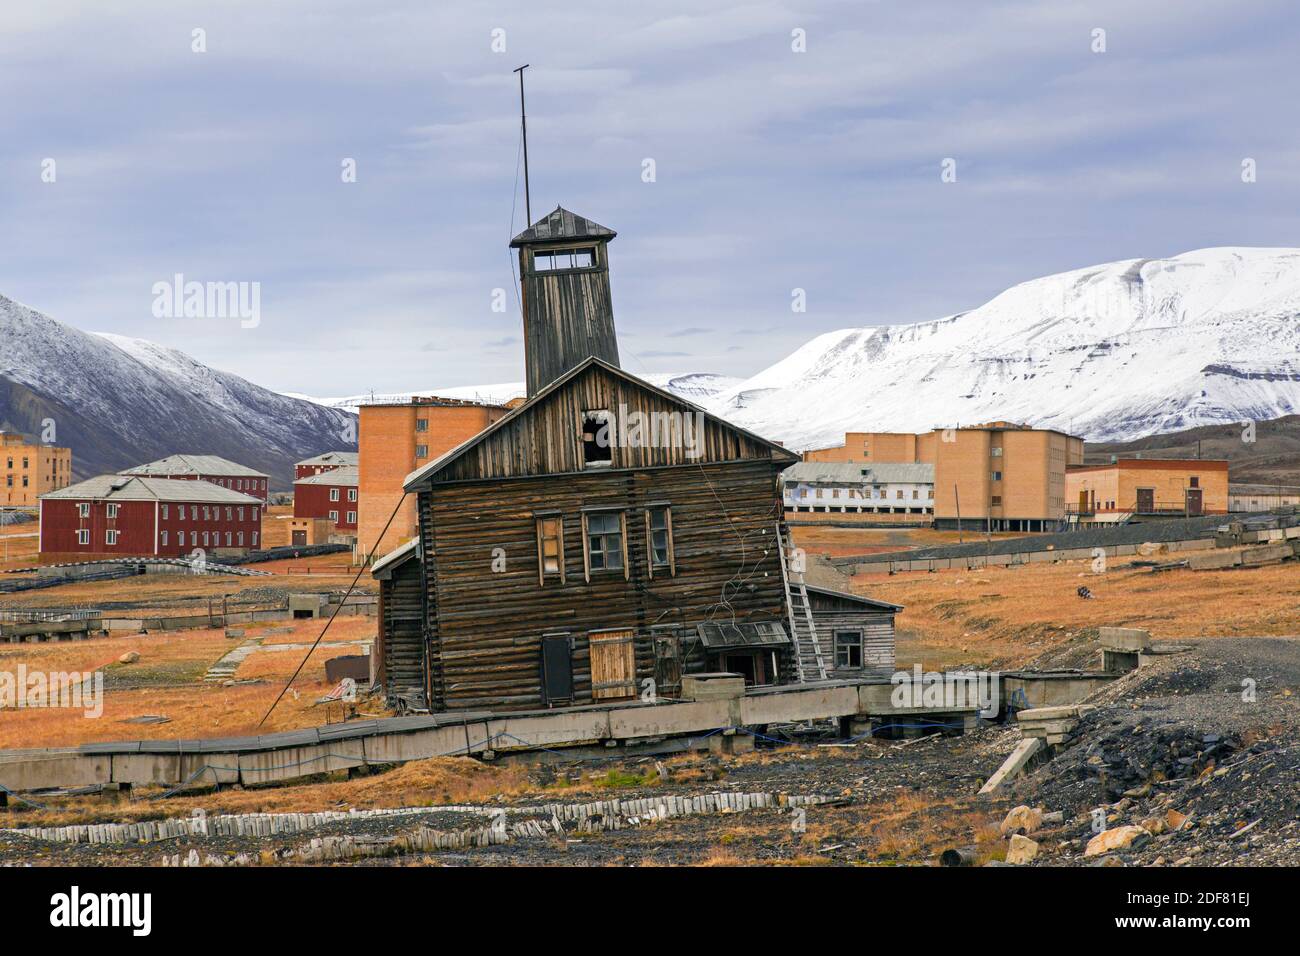 Edificio in legno derelict con torre a Pyramiden, abbandonato insediamento sovietico di miniere di carbone su Svalbard / Spitsbergen Foto Stock